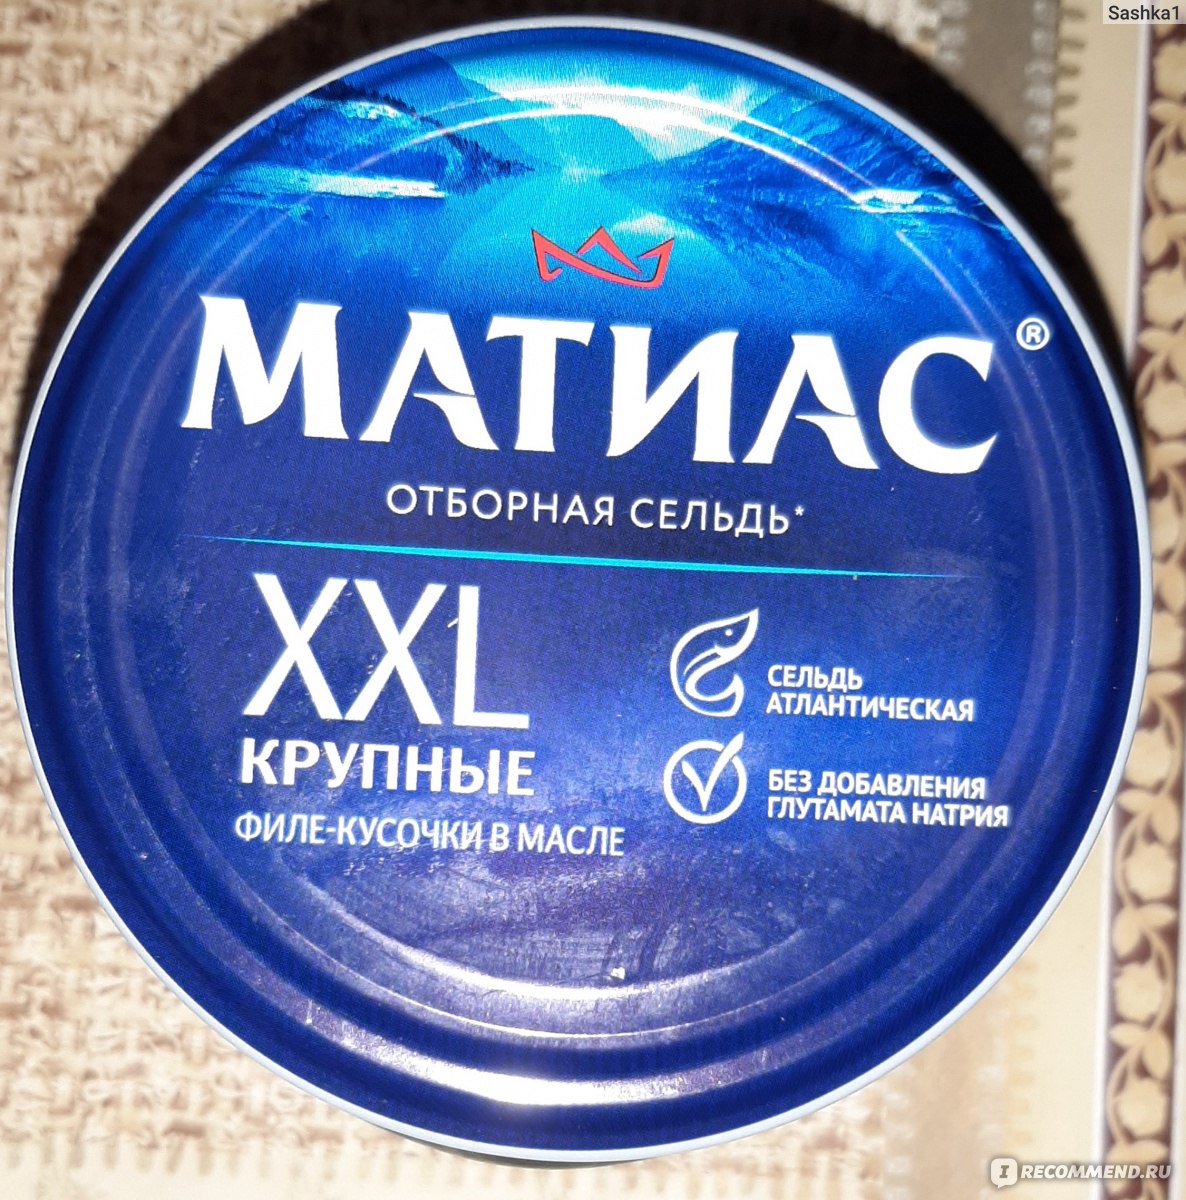 Консервы рыбные Матиас XXL отборный кусочки крупной жирной сельди